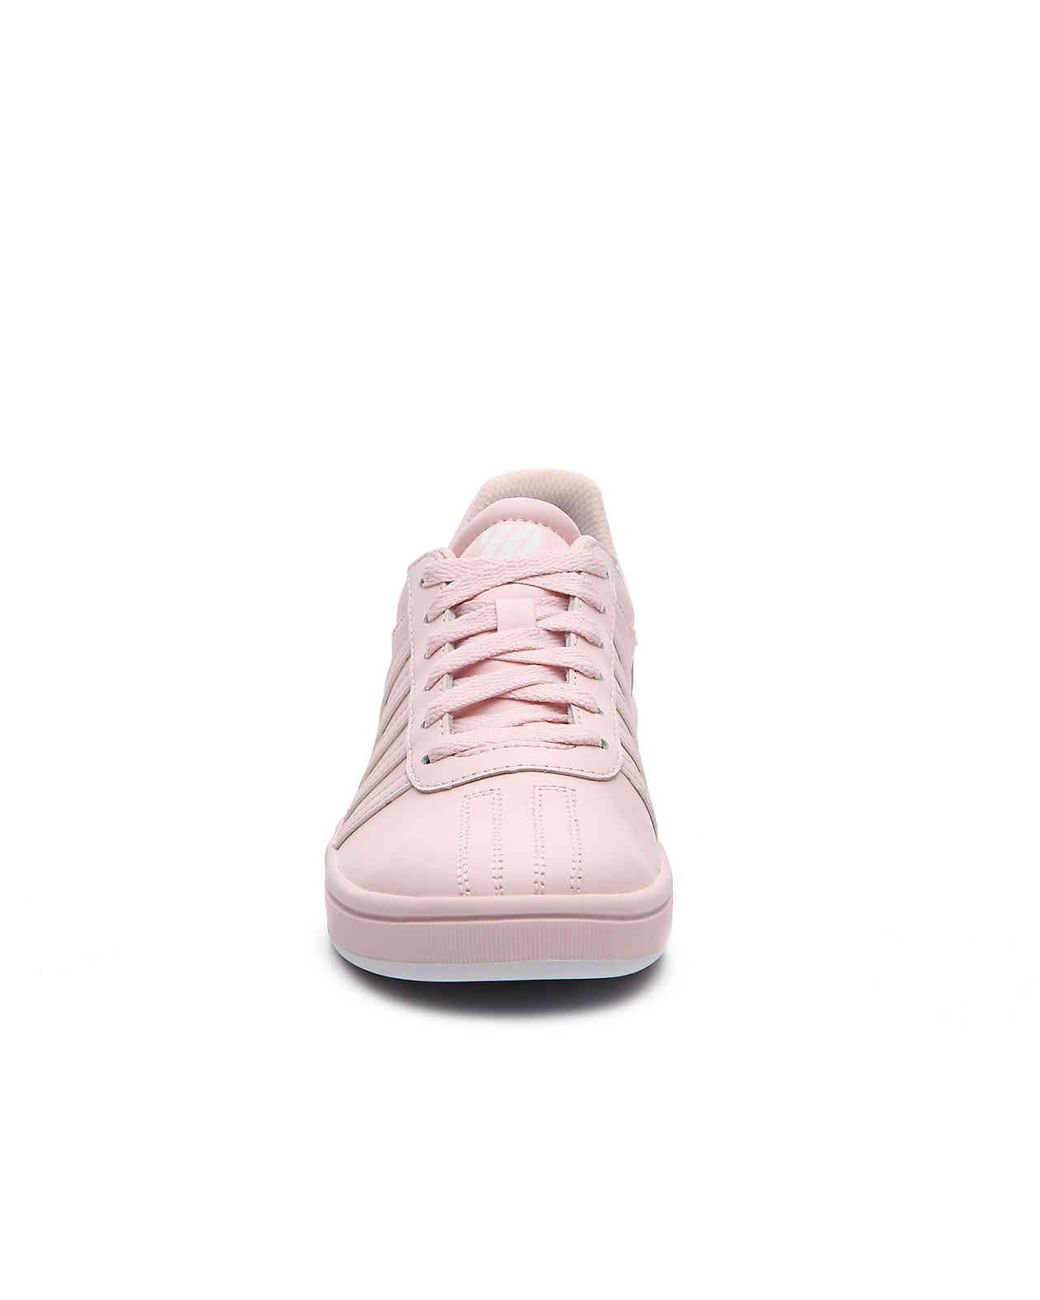 K-swiss Chesterfield Sneaker in Pink | Lyst